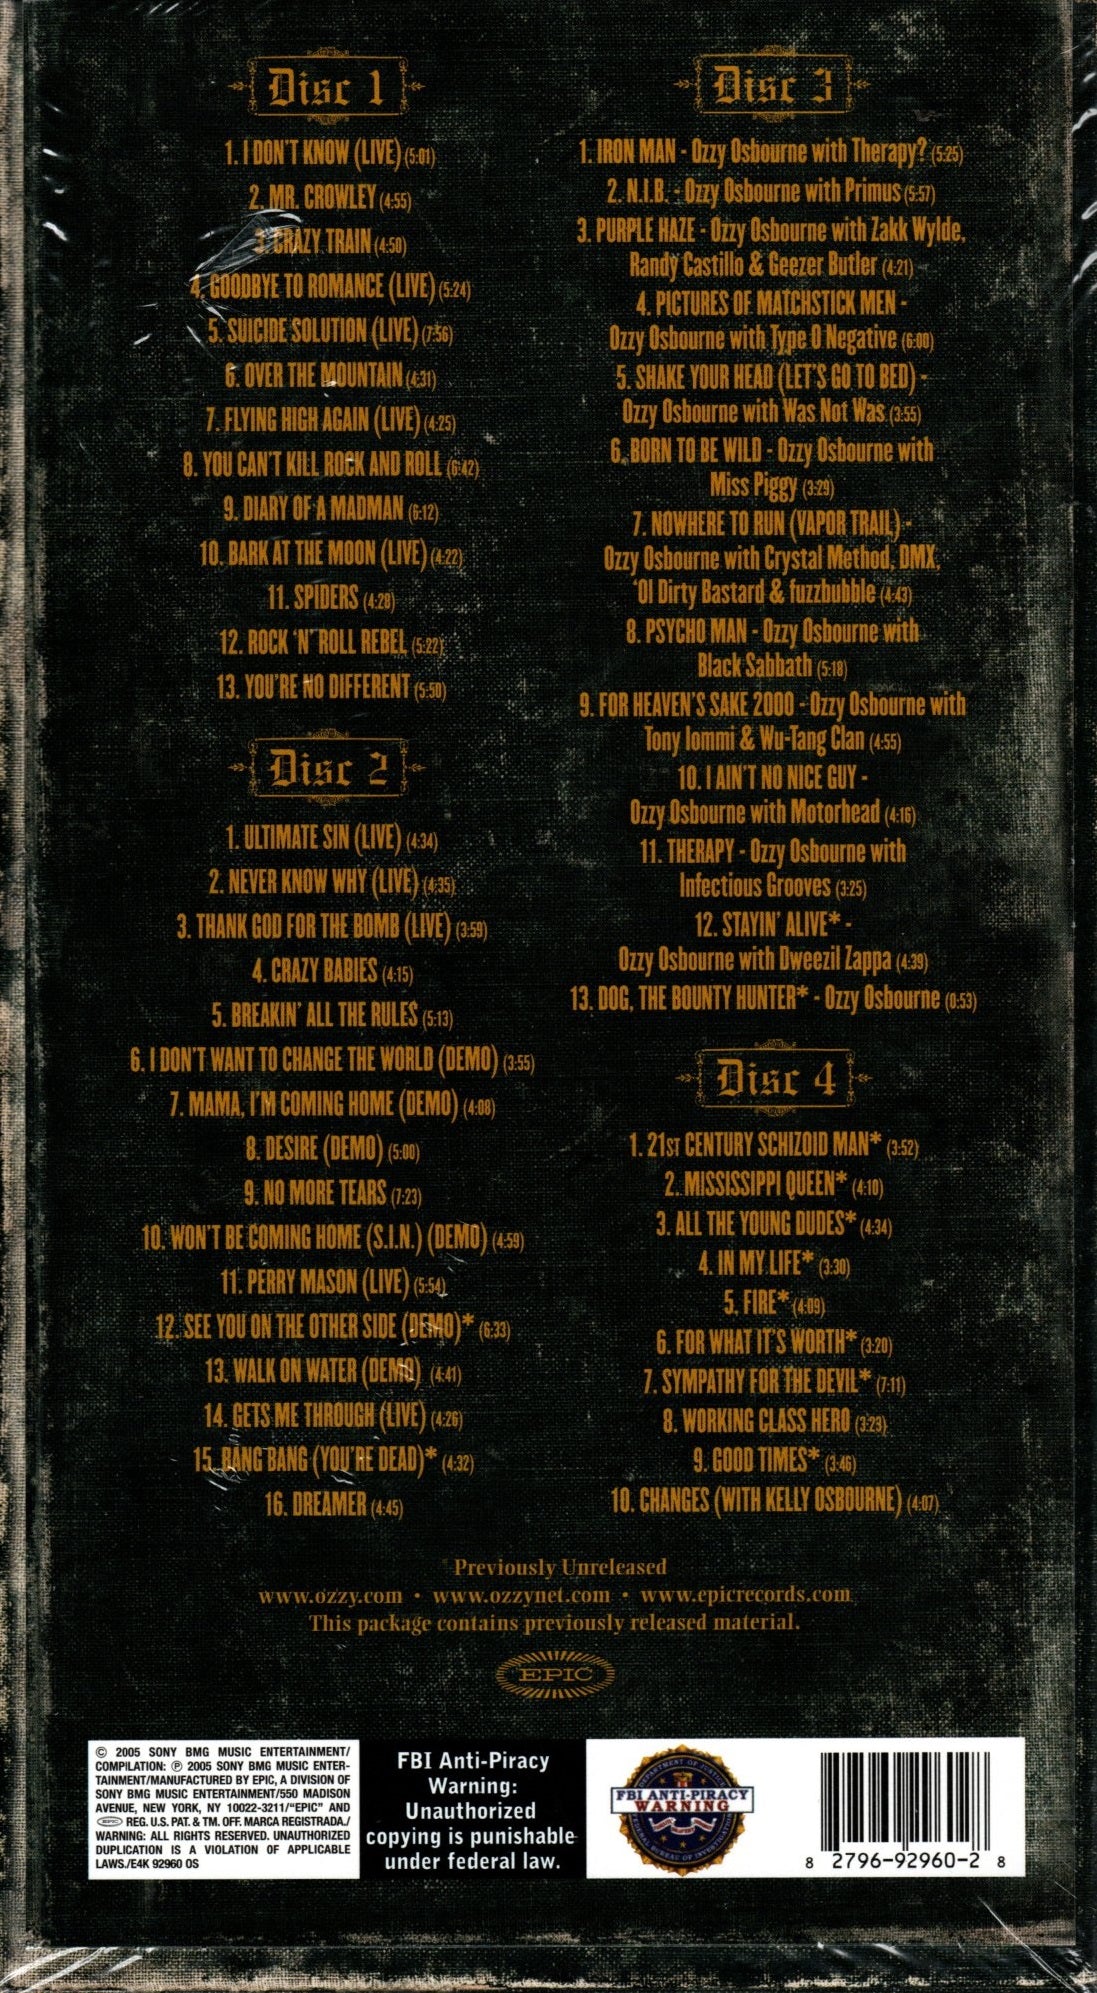 CD X4 Ozzy Osbourne – Prince Of Darkness